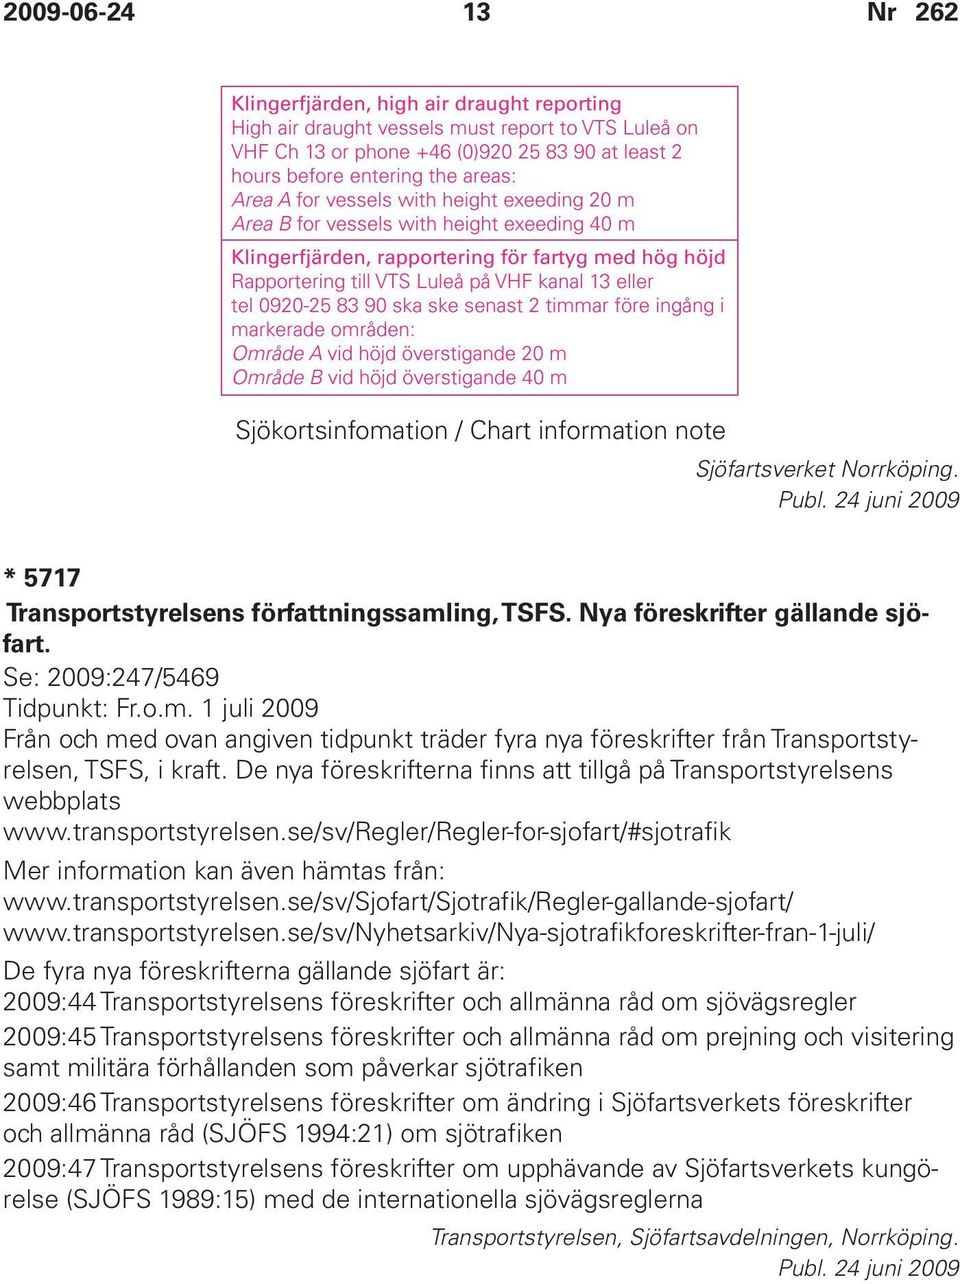 De nya föreskrifterna finns att tillgå på Transportstyrelsens webbplats www.transportstyrelsen.se/sv/regler/regler-for-sjofart/#sjotrafik Mer information kan även hämtas från: www.transportstyrelsen.se/sv/sjofart/sjotrafik/regler-gallande-sjofart/ www.